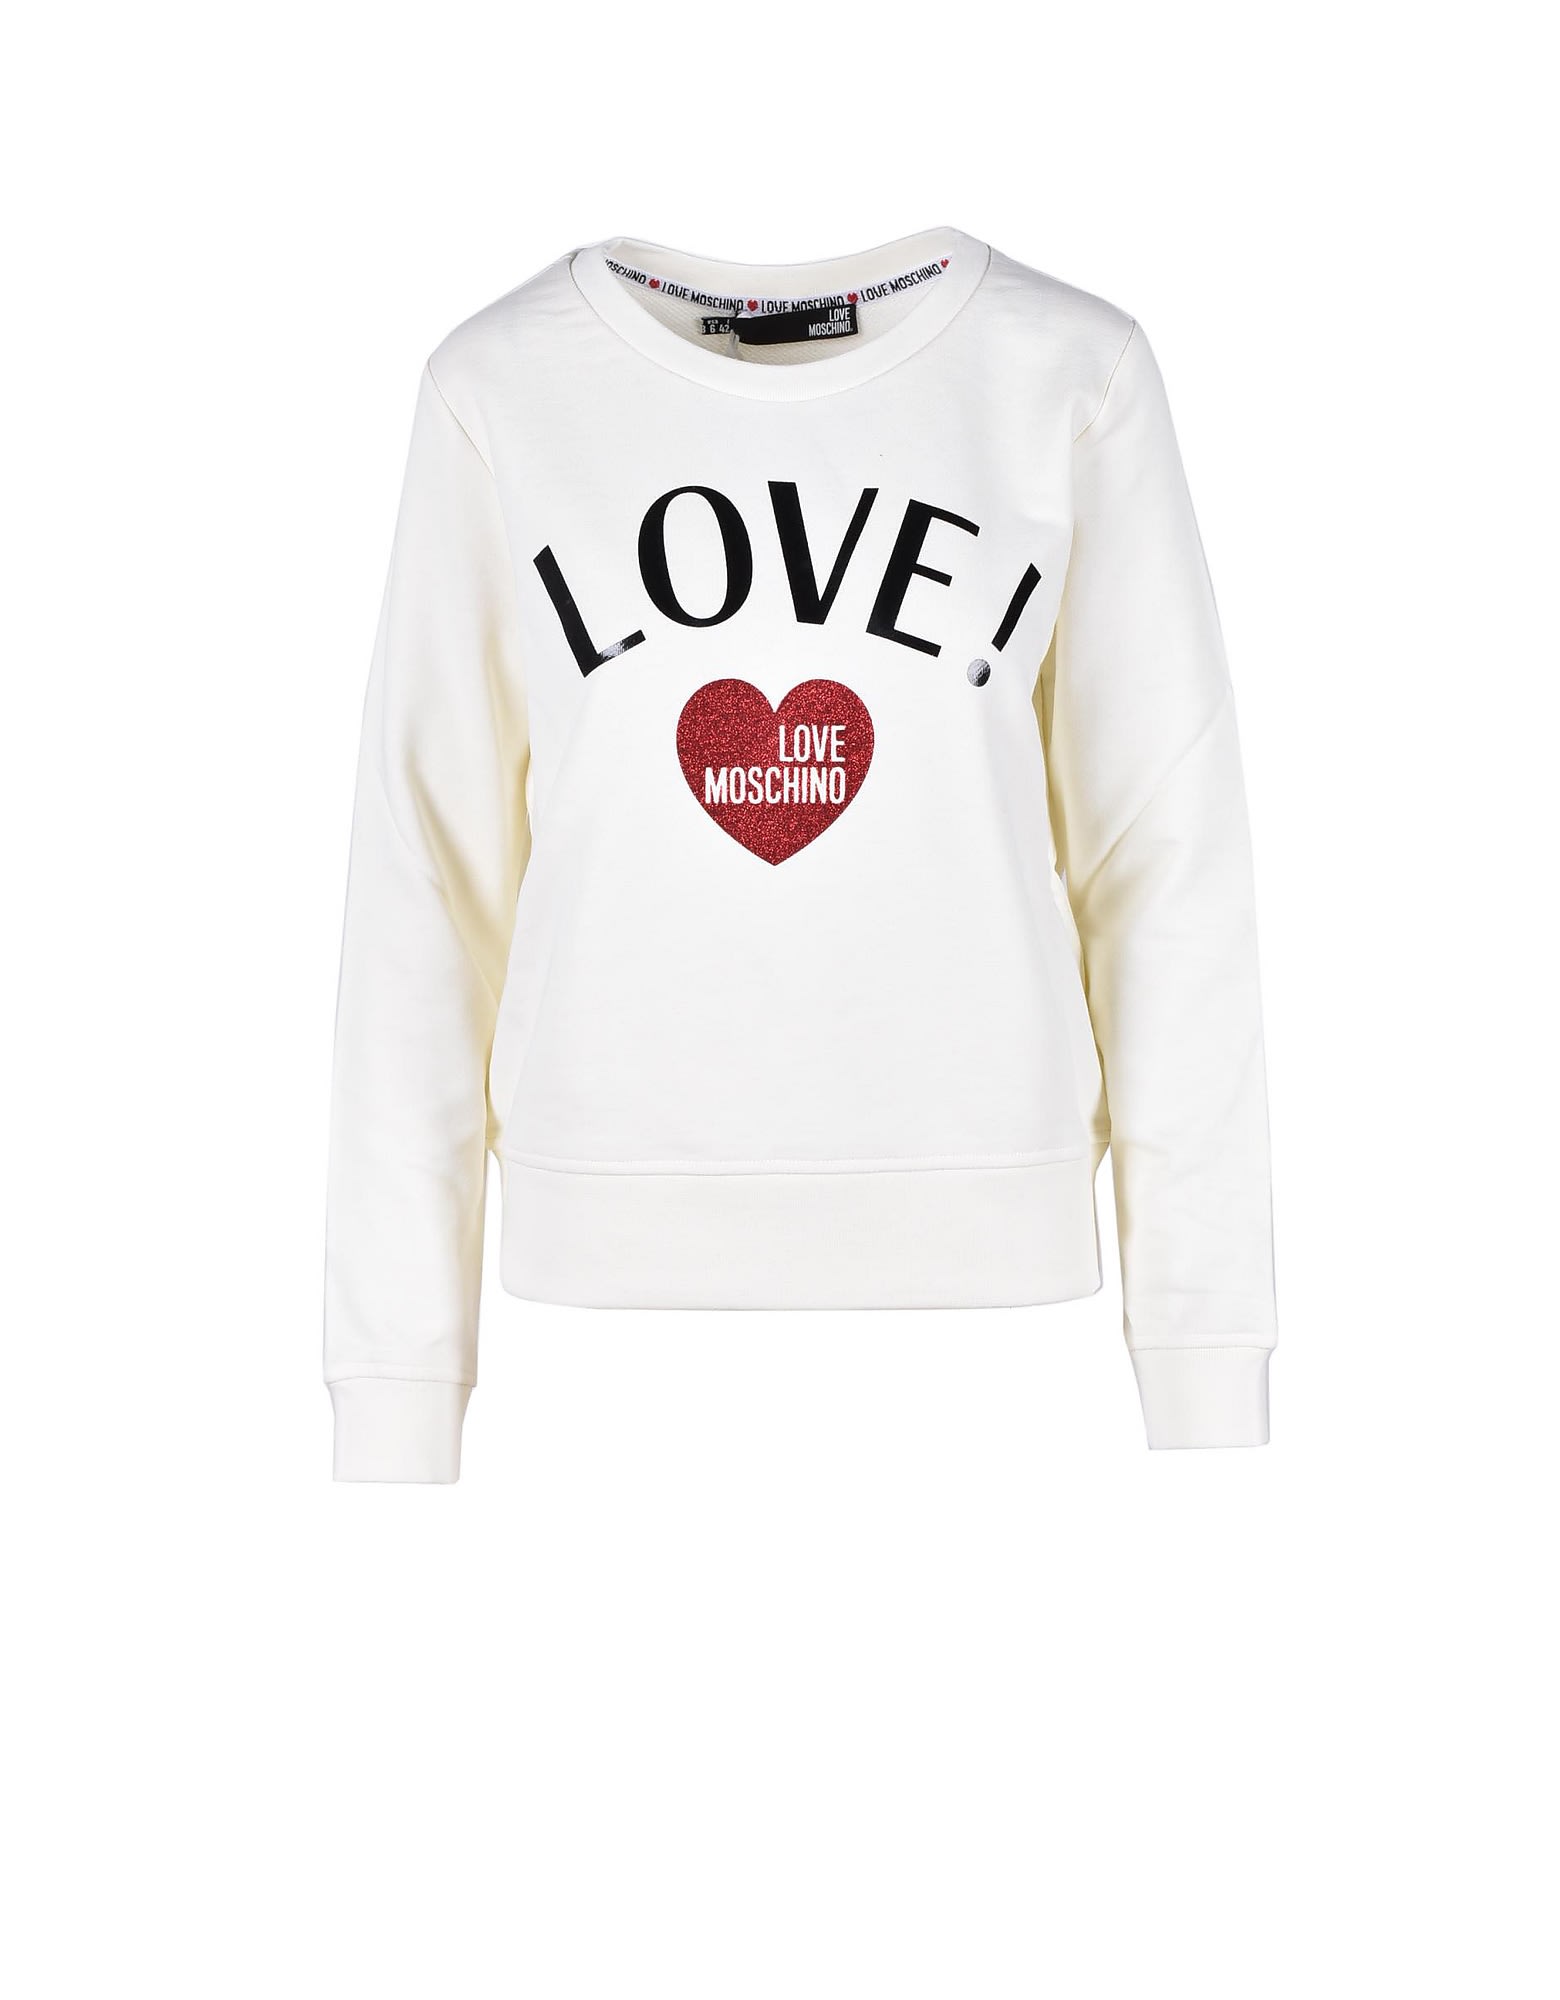 Love Moschino Womens Cream Sweatshirt